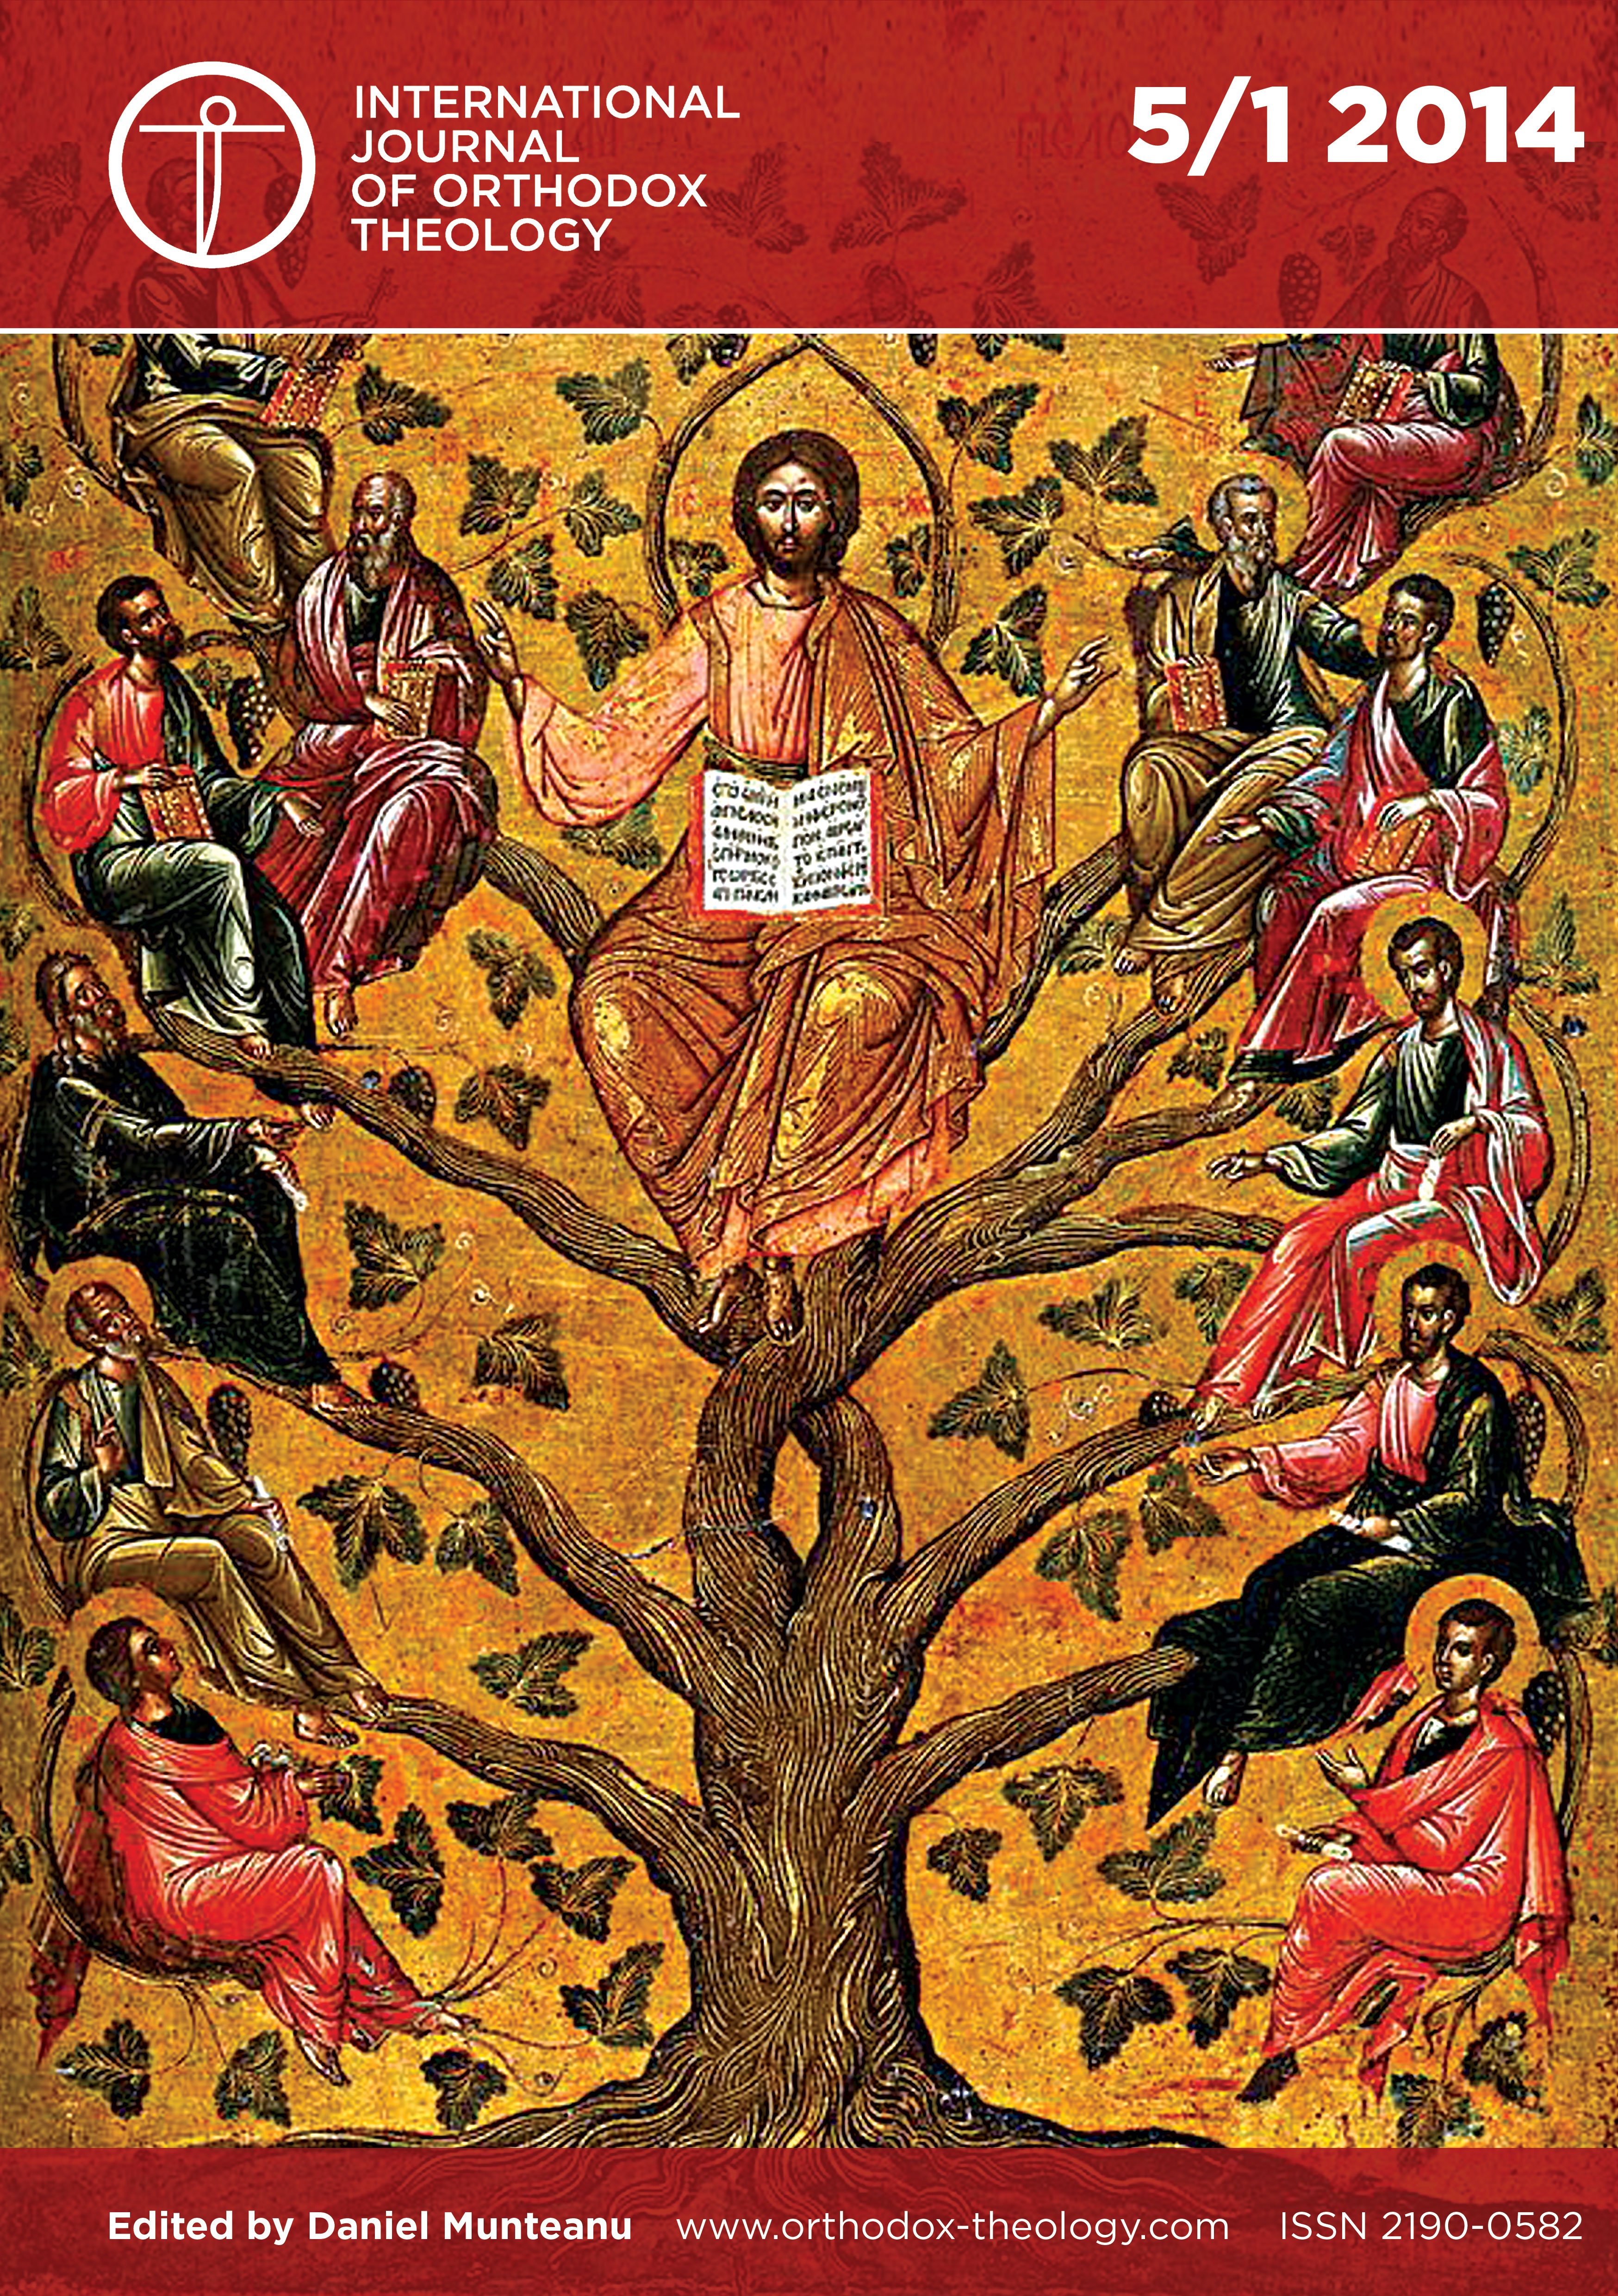 https://www.orthodox-theology.com/media/Bilder/Cover/5.1.2014.jpg